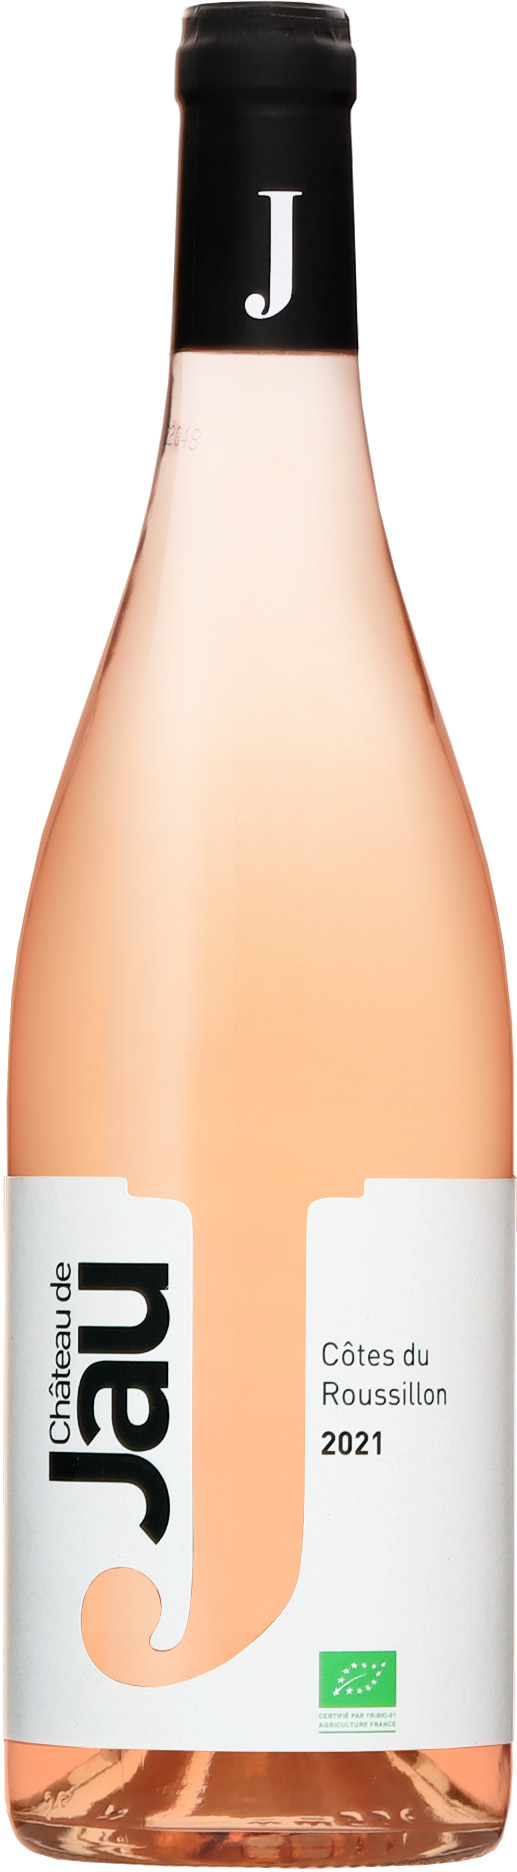 Chateau de Jau Côtes du Roussillon Rose 2021 13% 0,75l (čistá flaša)